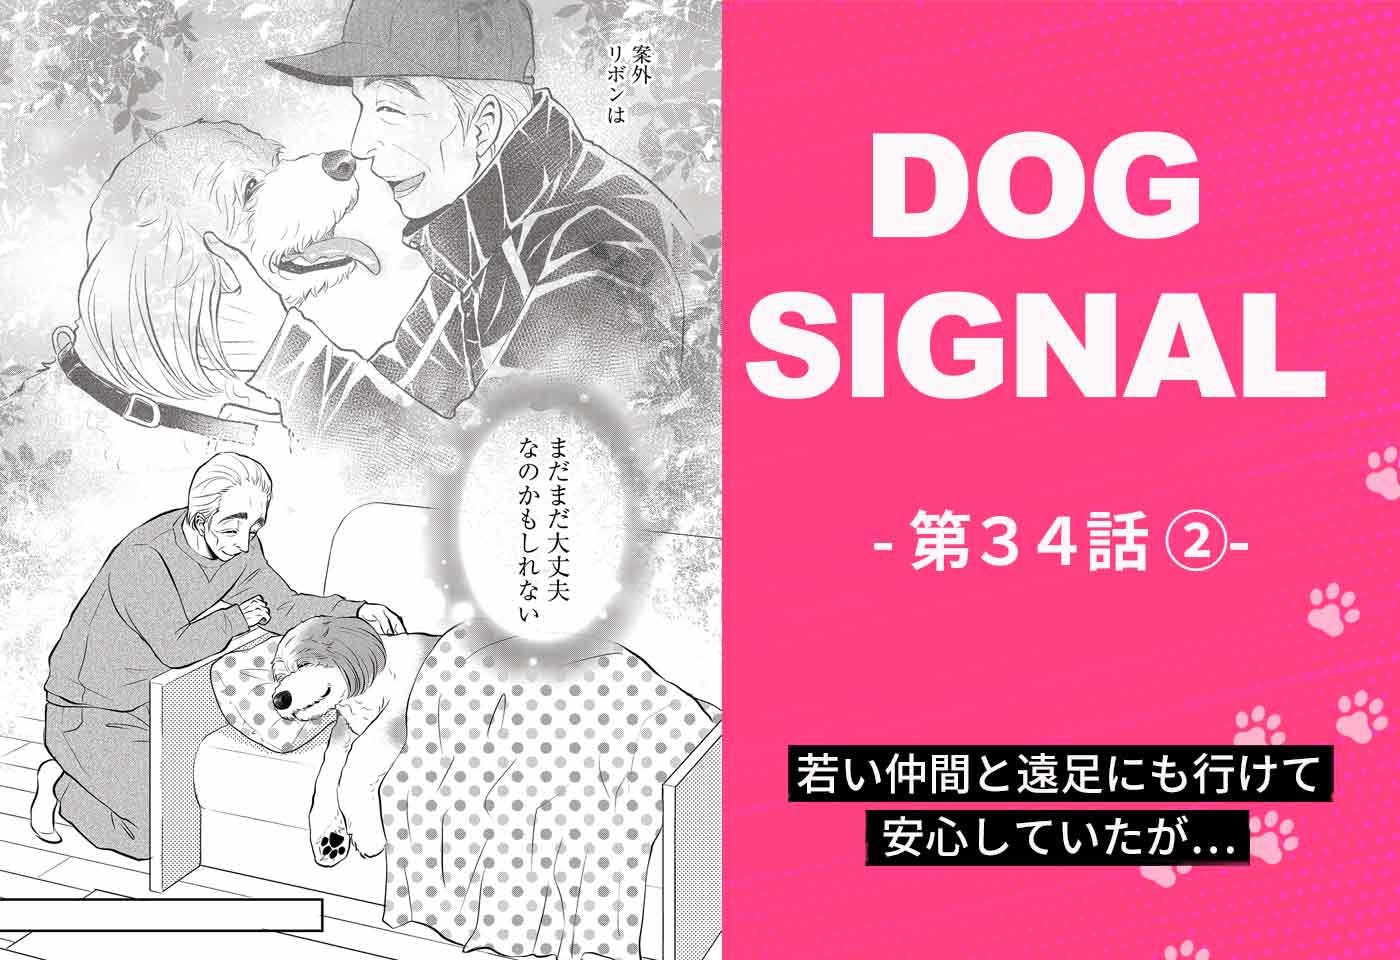 『DOG SIGNAL（ドッグシグナル）』34話目2/4　仲間と遠足に行く老犬リボン